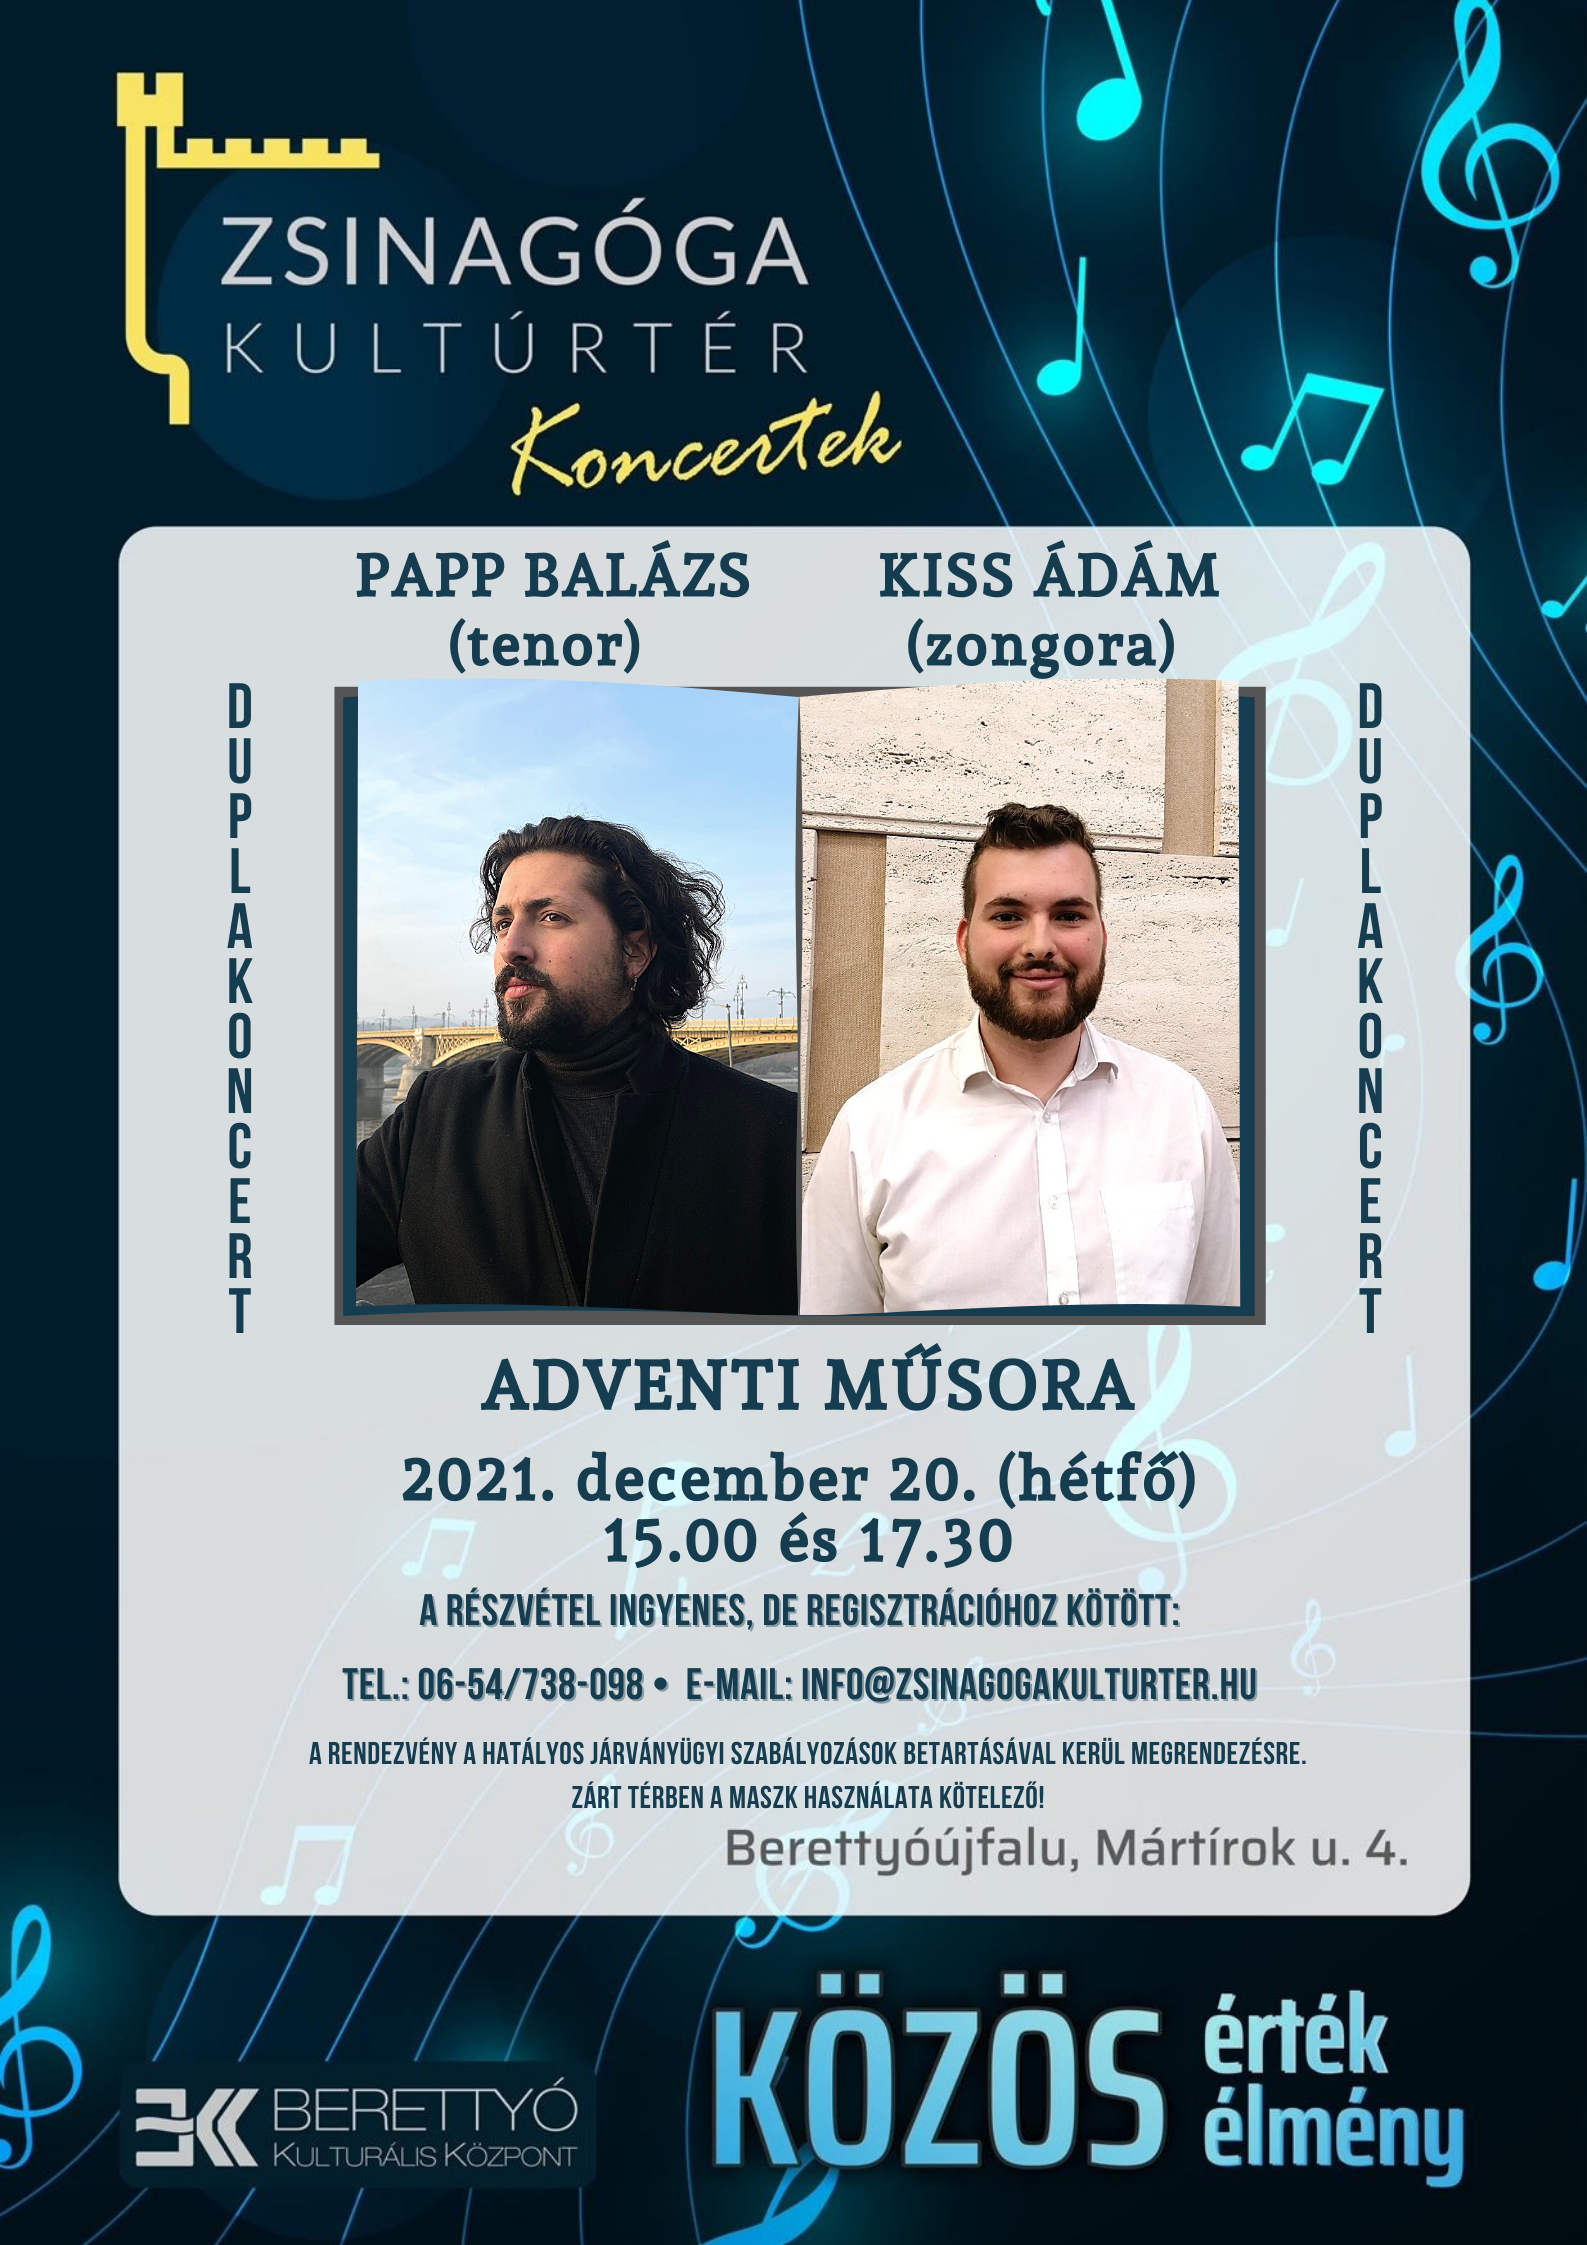 Zsinagóga Koncertek - Papp Balázs (tenor) és Kiss Ádám (zongora) adventi műsora